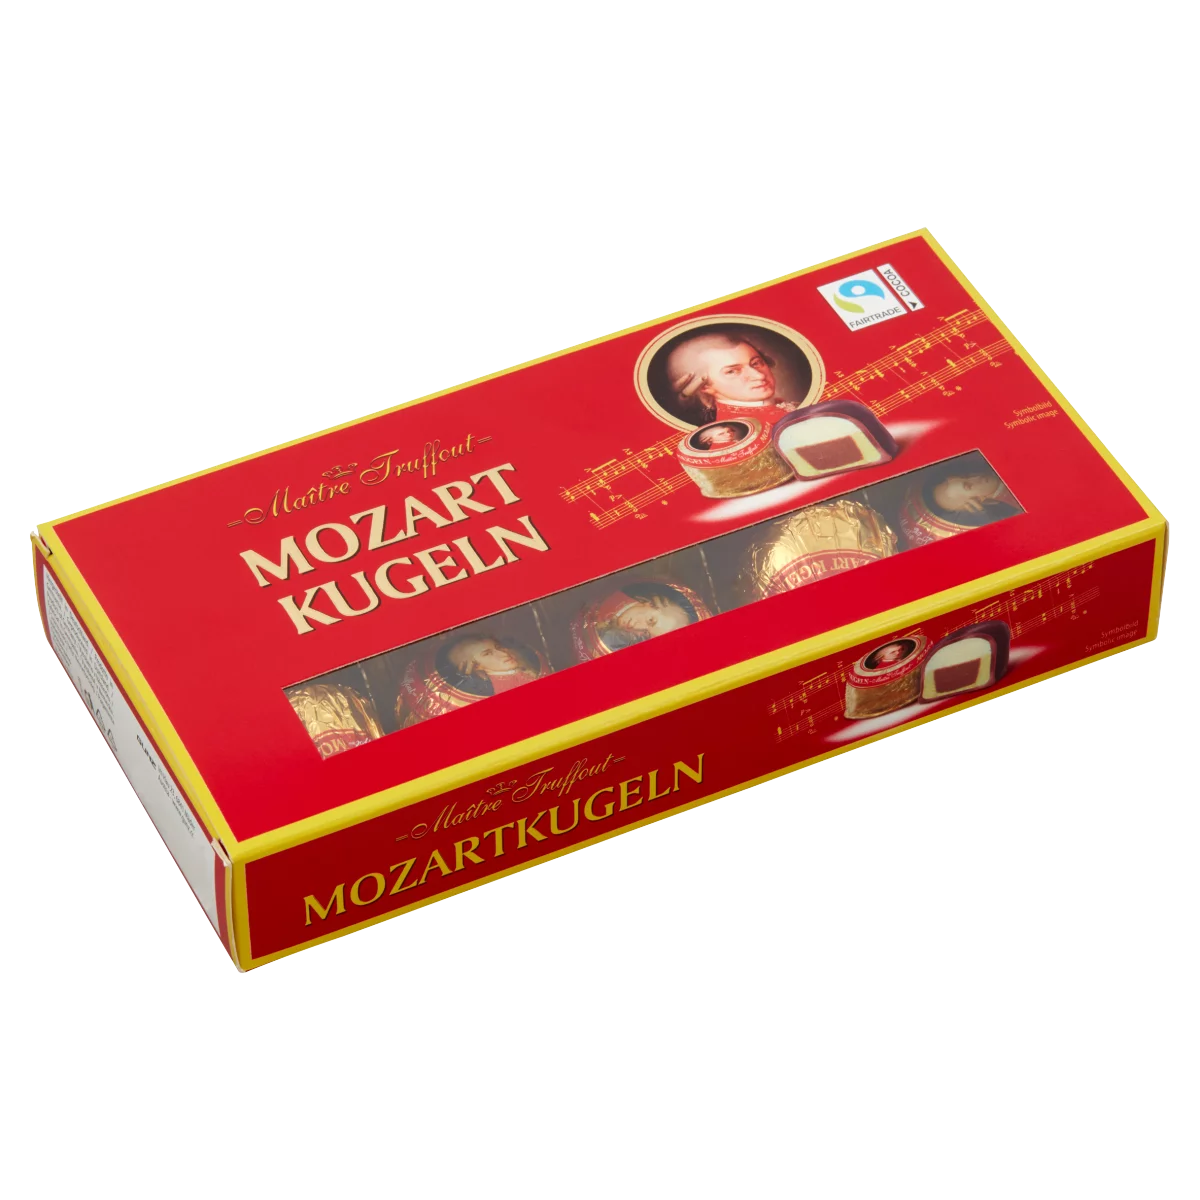 Mozart Kugeln praliné, pisztáciás marcipán, marcipán & mogyorós nugát csokoládés bevonattal 200 g